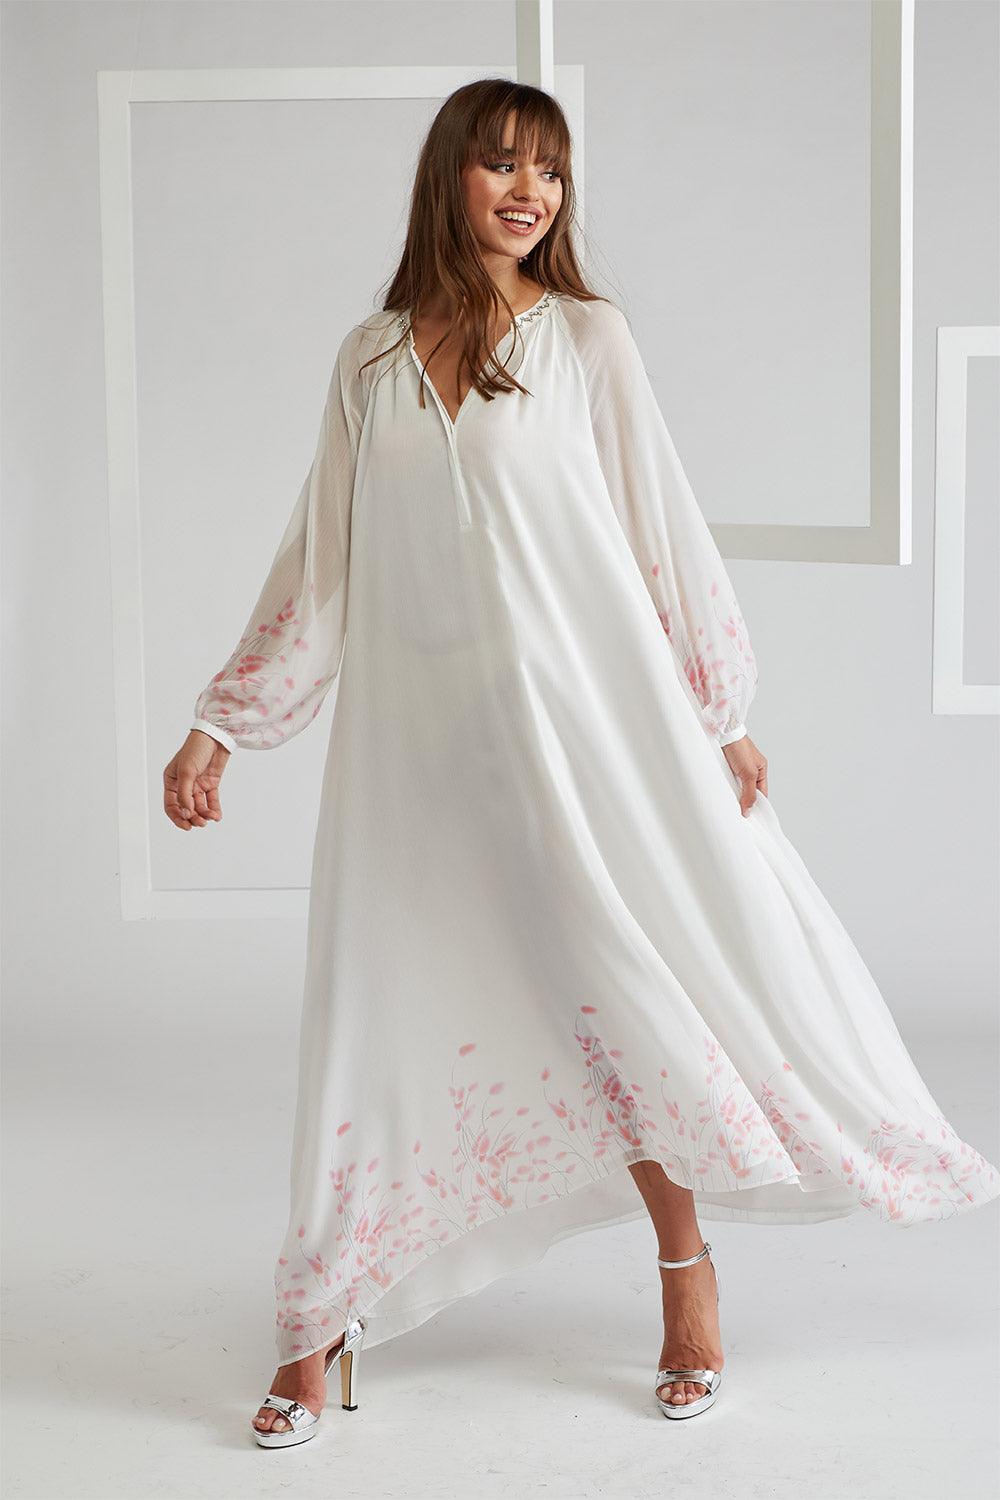 Silk Chiffon Dress Off White Layered by Viscose - Bocan